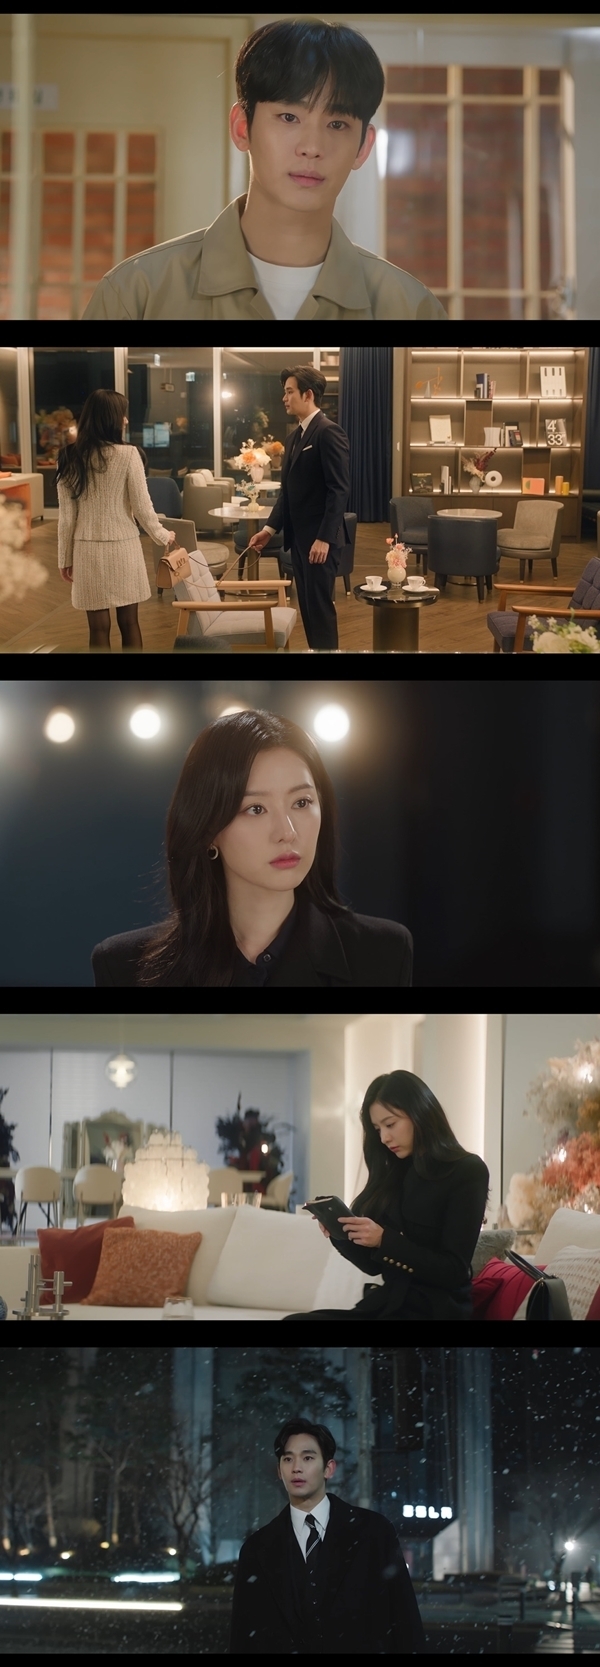 지난 27일 방송된 tvN 토일드라마 ‘눈물의 여왕’에서는 사랑하는 사람의 곁으로 가던 백현우(김수현 분)와 삶의 유일한 이유를 되찾은 홍해인(김지원 분)의 앞에 적신호가 켜져 안타까움을 안겼다. / 사진 = 눈물의 여왕